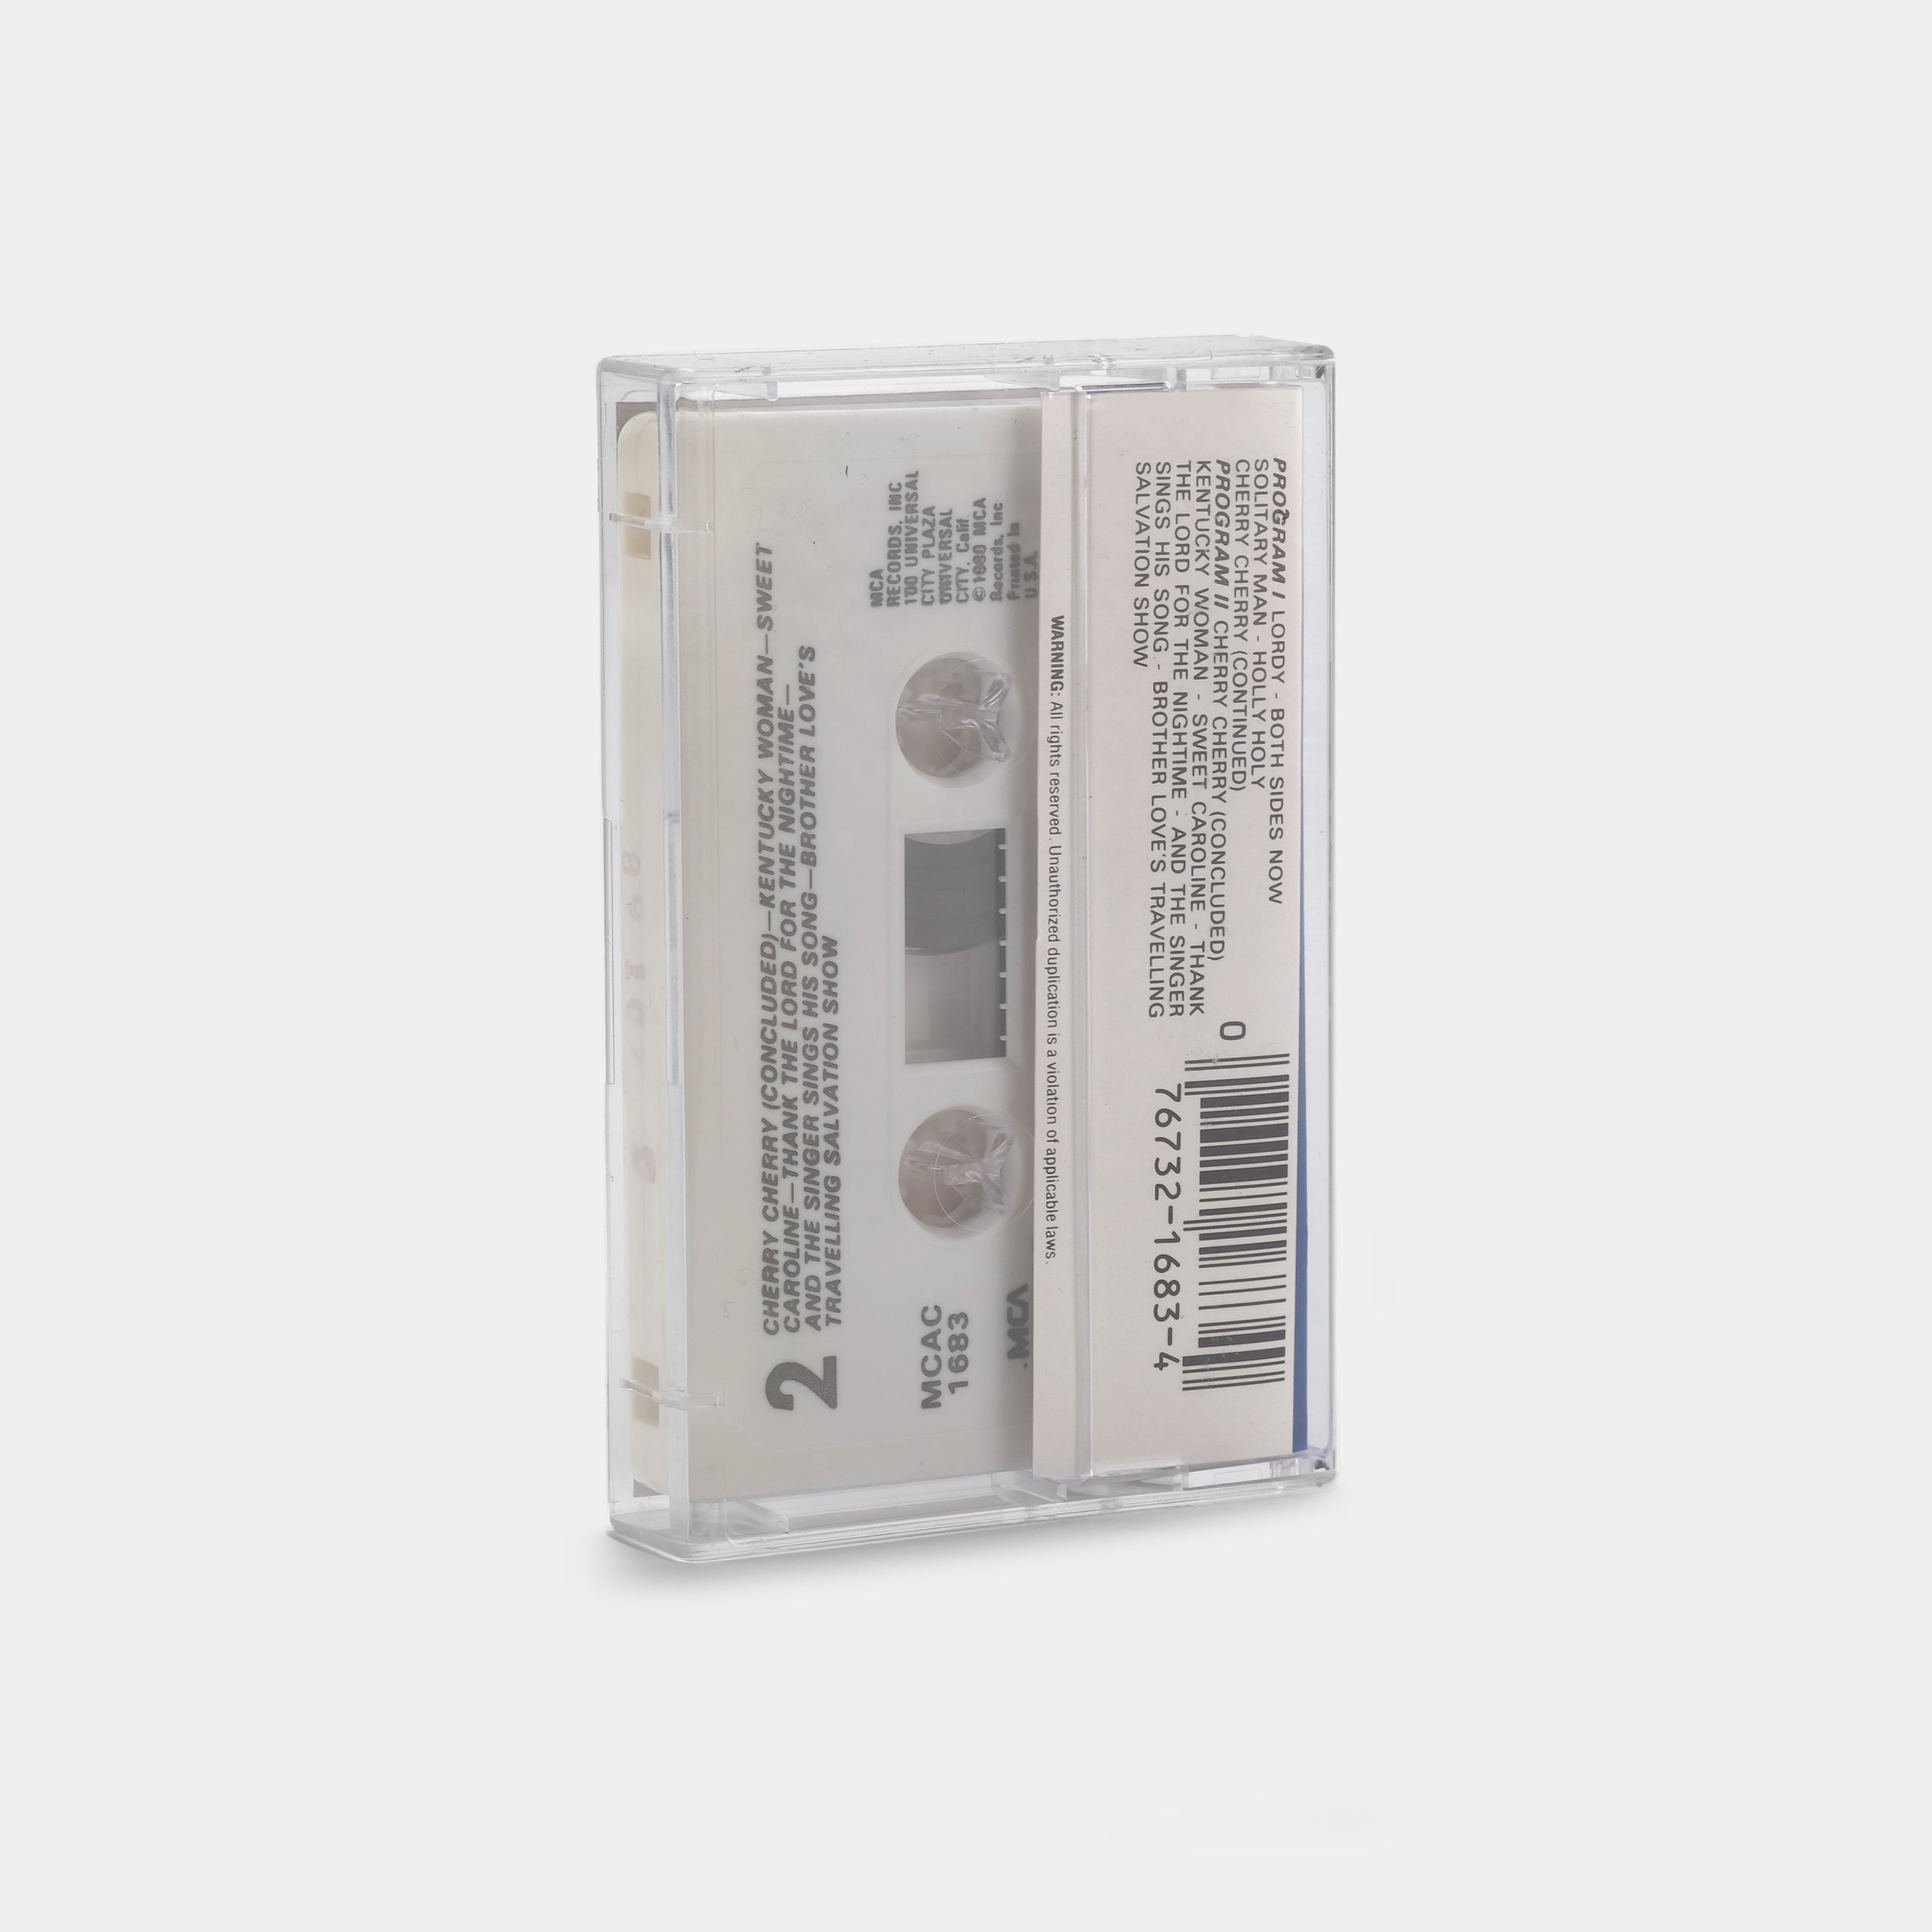 Neil Diamond - Gold Cassette Tape